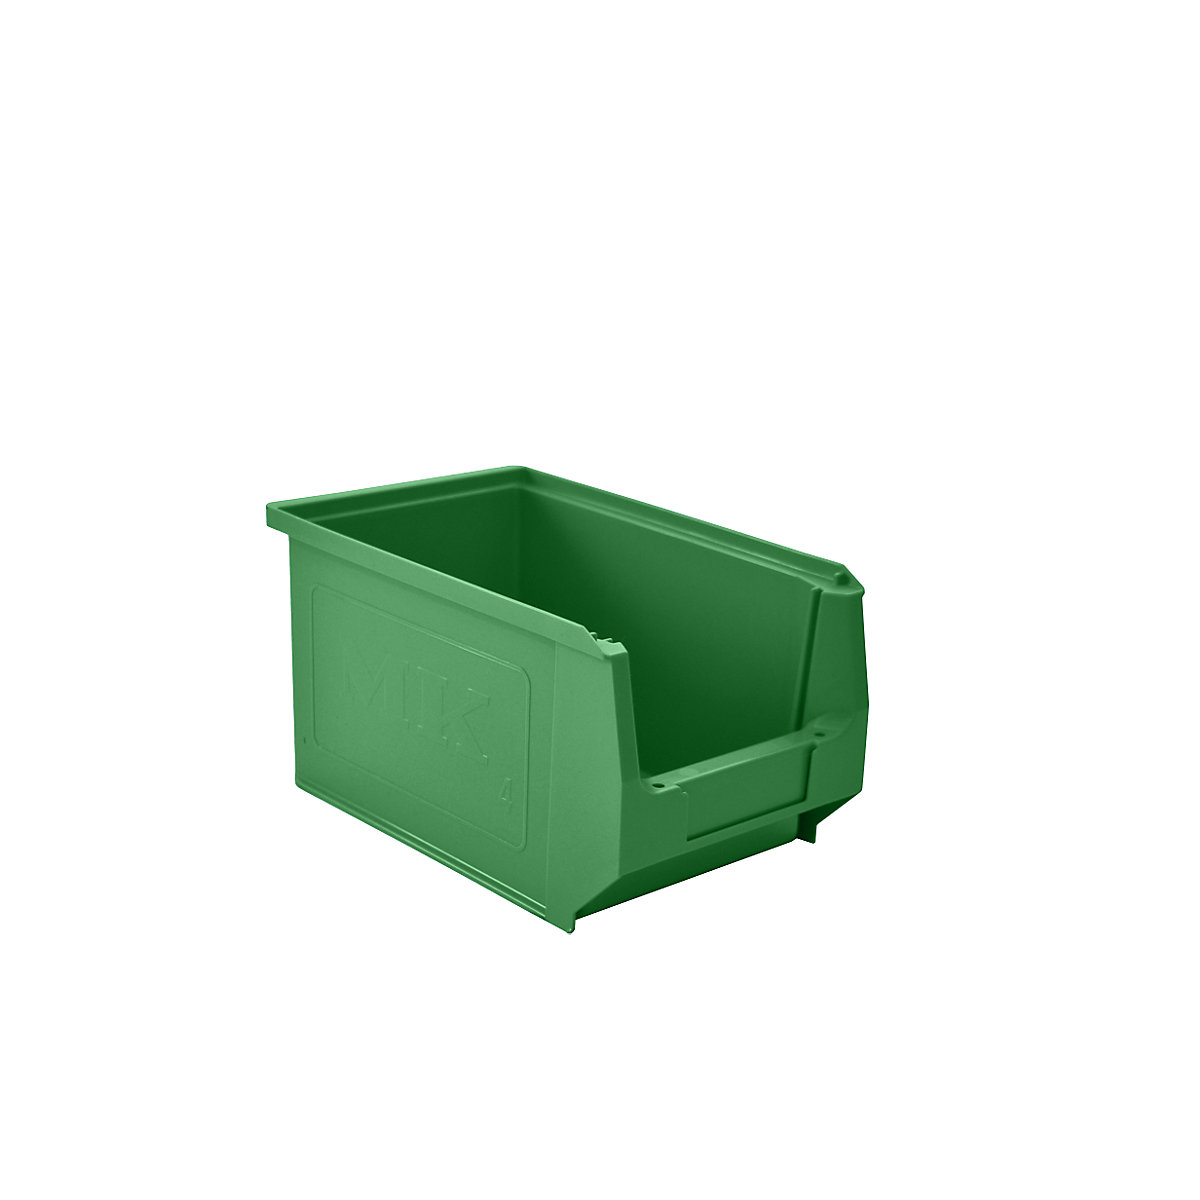 Sichtlagerkasten aus Polyethylen mauser, LxBxH 230 x 150 x 130 mm, grün, VE 25 Stk-7